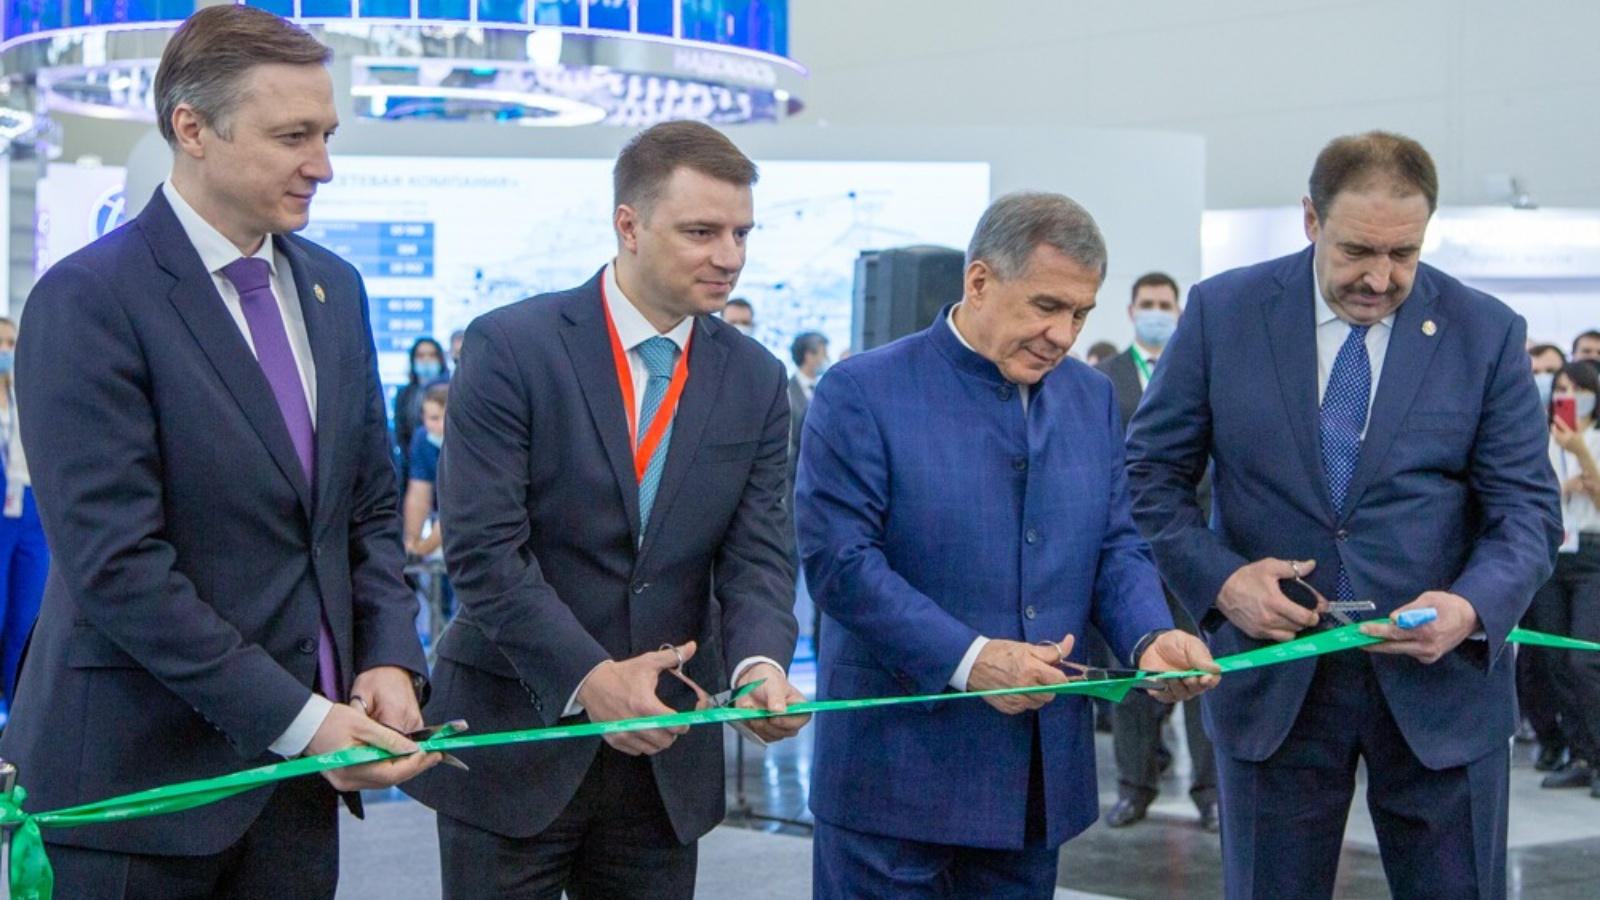 Рустам Минниханов: В Татарстане вопросам энергоэффективности и ресурсосбережения уделяется приоритетное значение